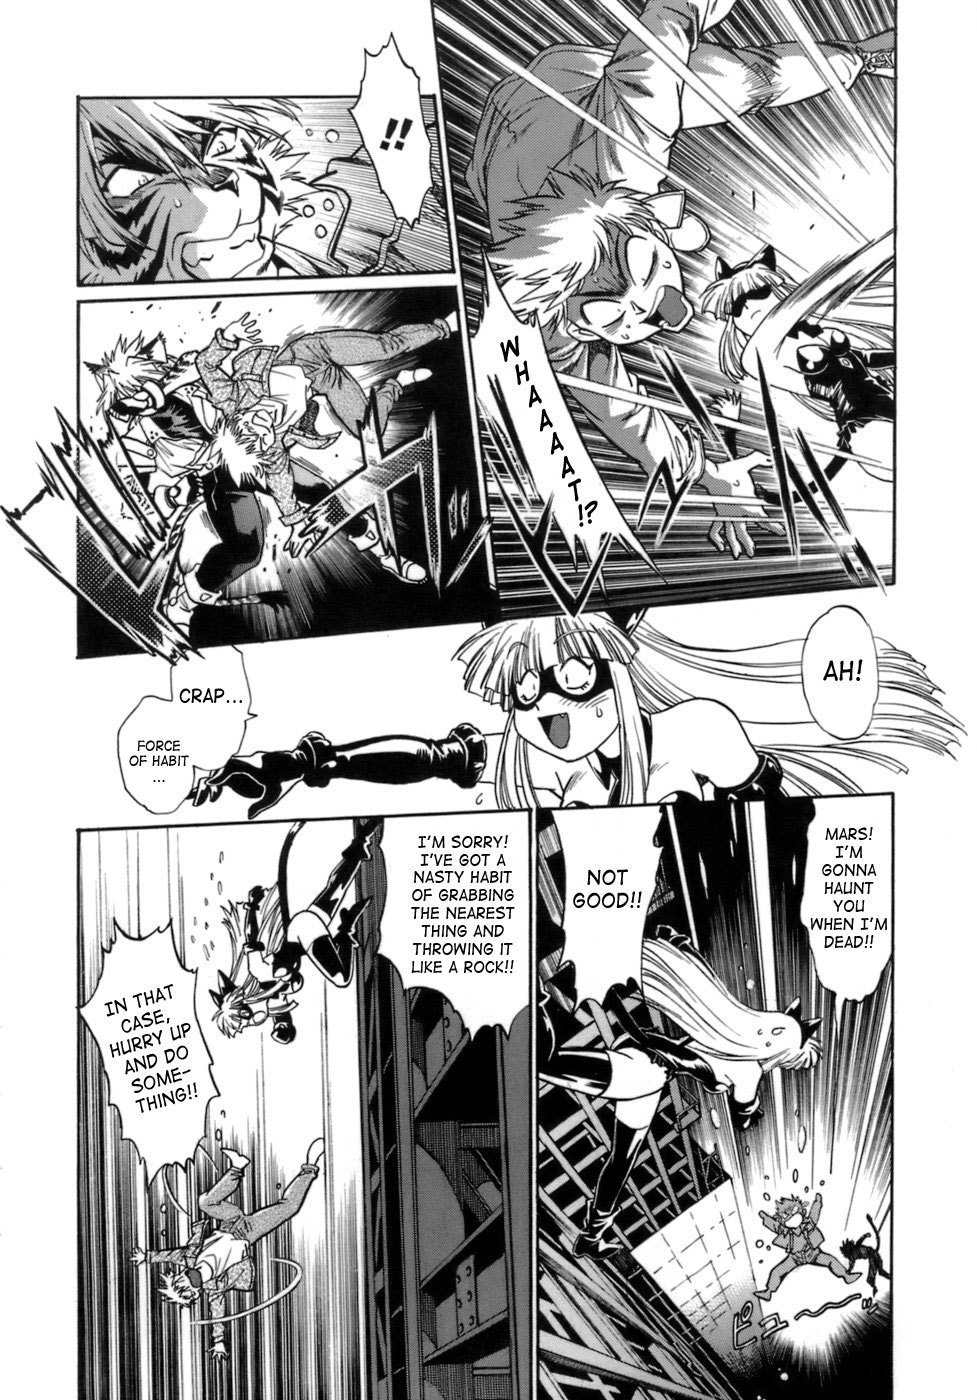 Tail Chaser Vol.1 48 hentai manga